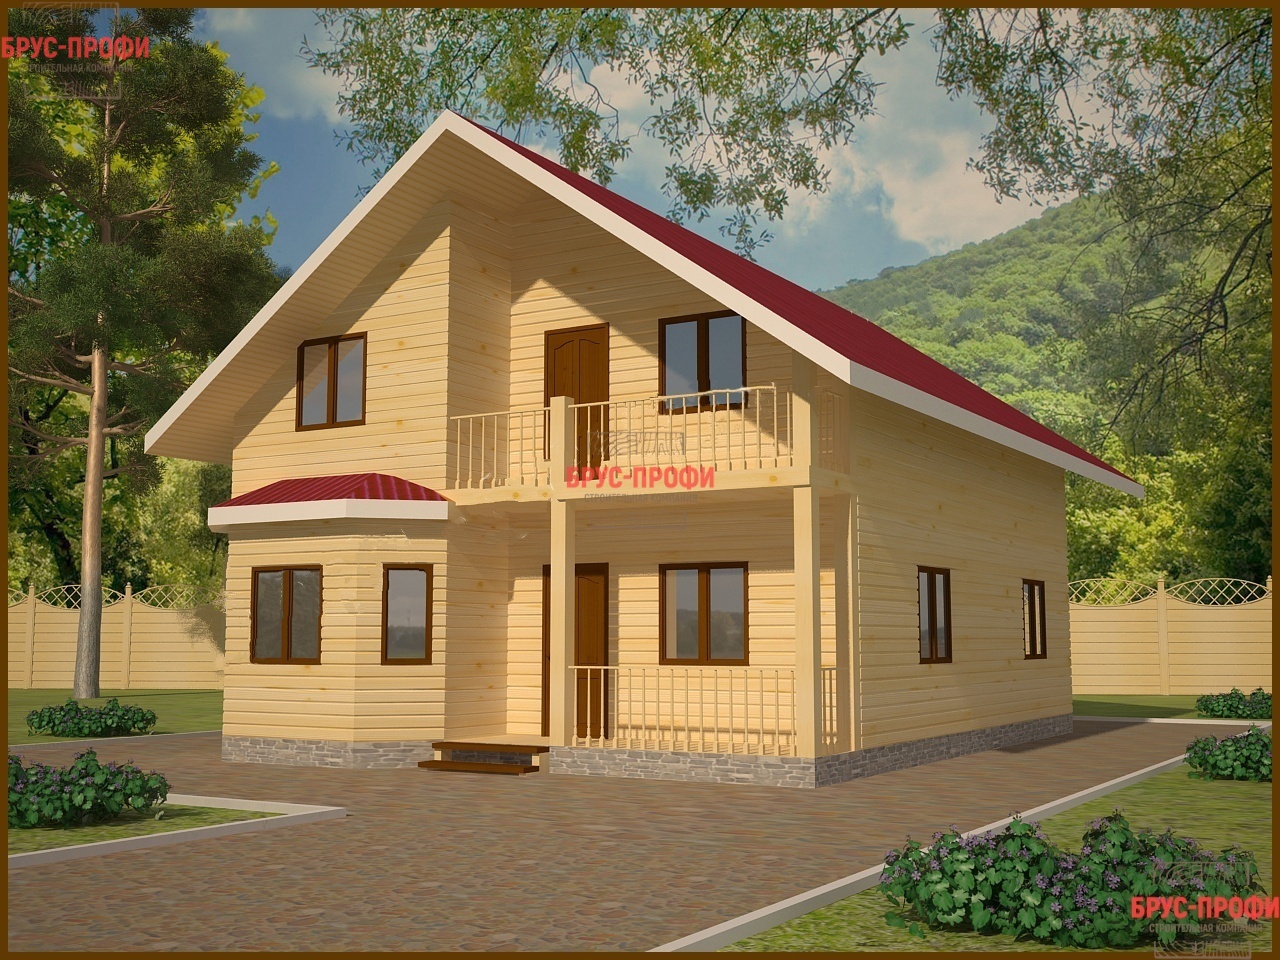 Процесс строительства деревянного дома от фундамента до крыши